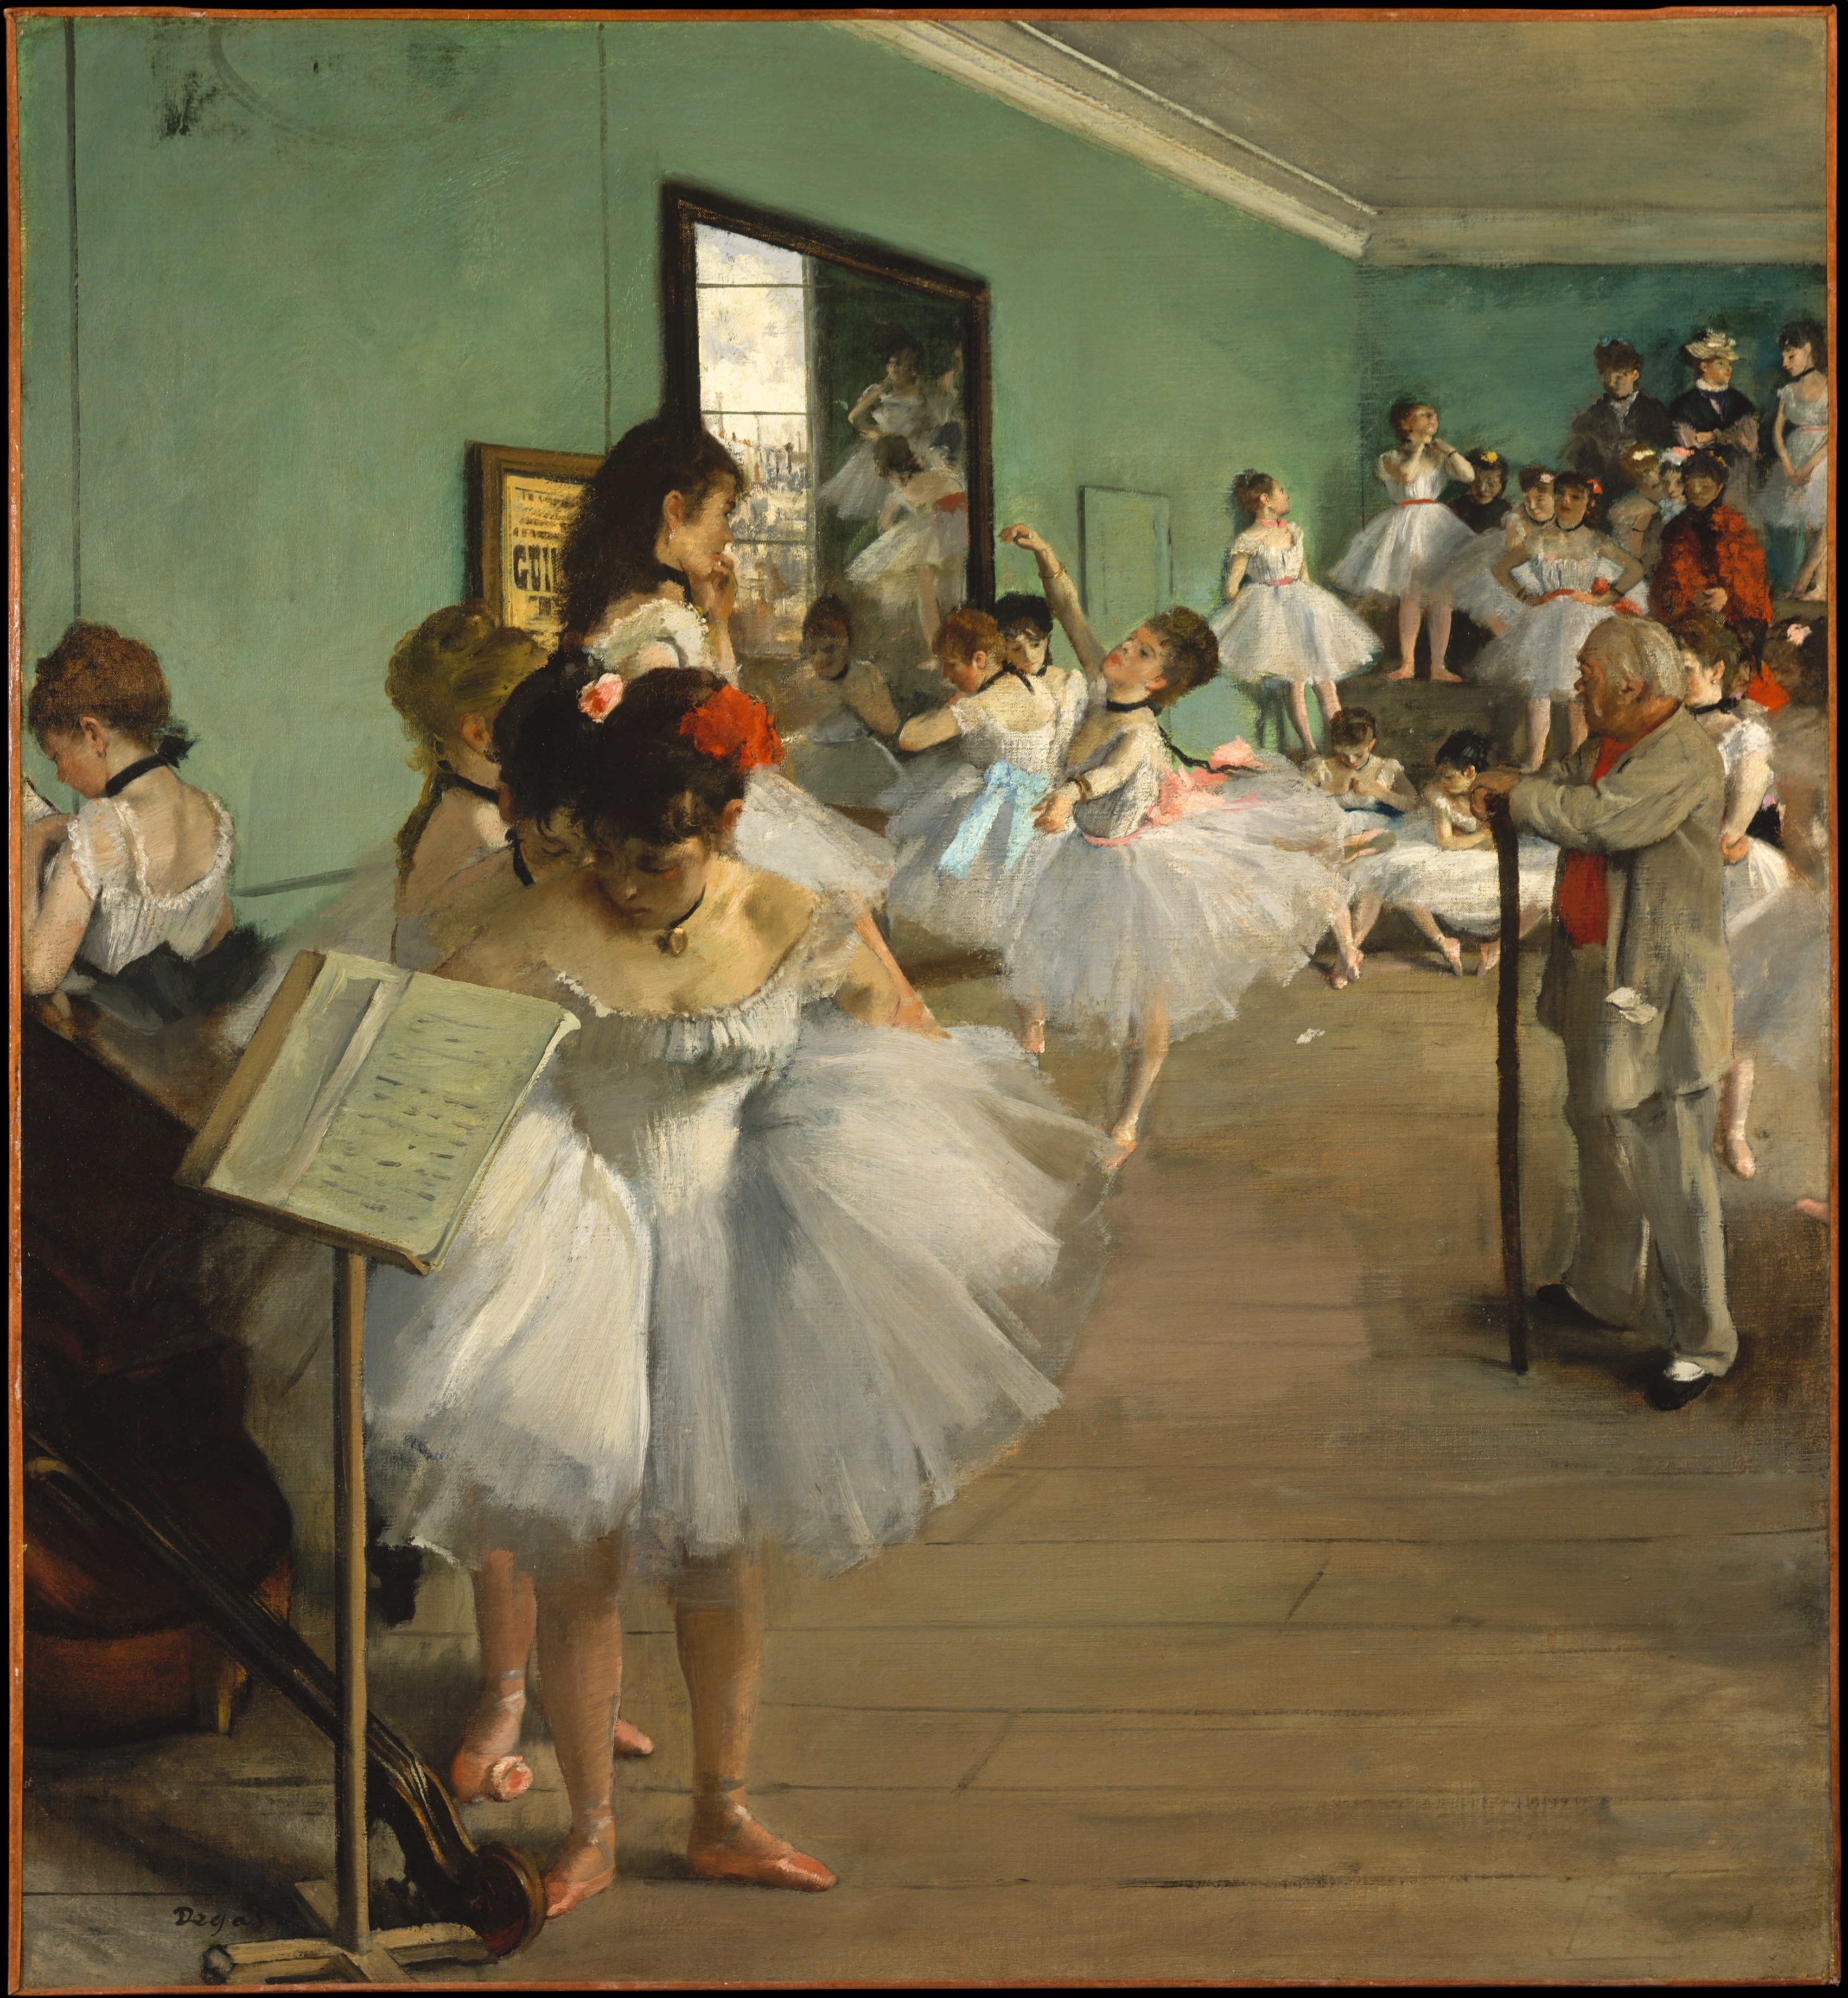 The Dance Class by Edgar Degas - 1874 - 83.5 x 77.2 cm Metropolitan Museum of Art